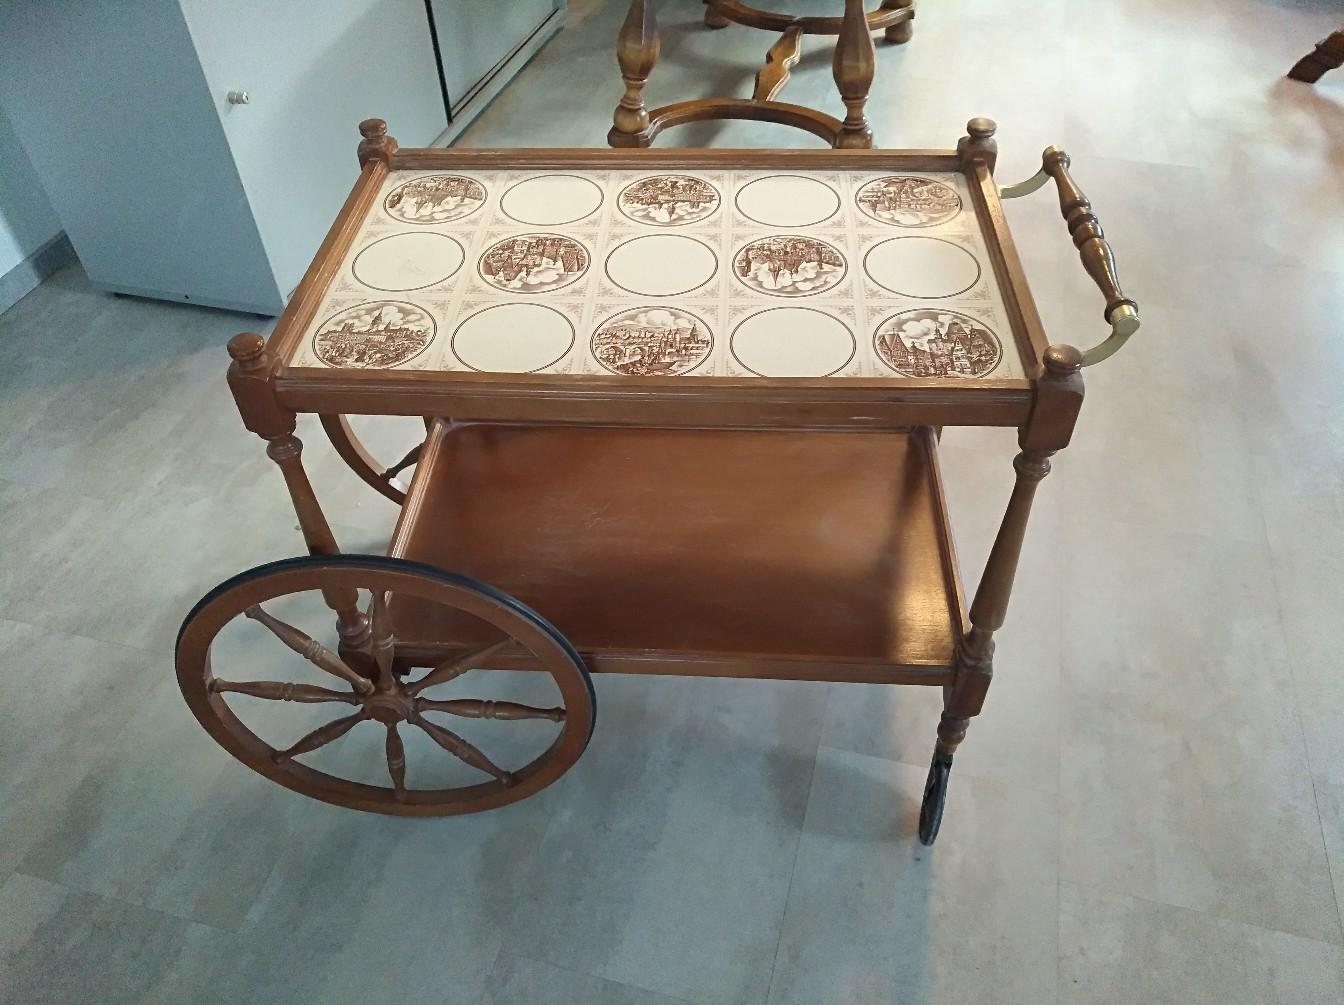 Antike Fundgrube Servierwagen Teewagen Beistelltisch aus Holz im Nussbaum-Farbton L 85 cm 9071